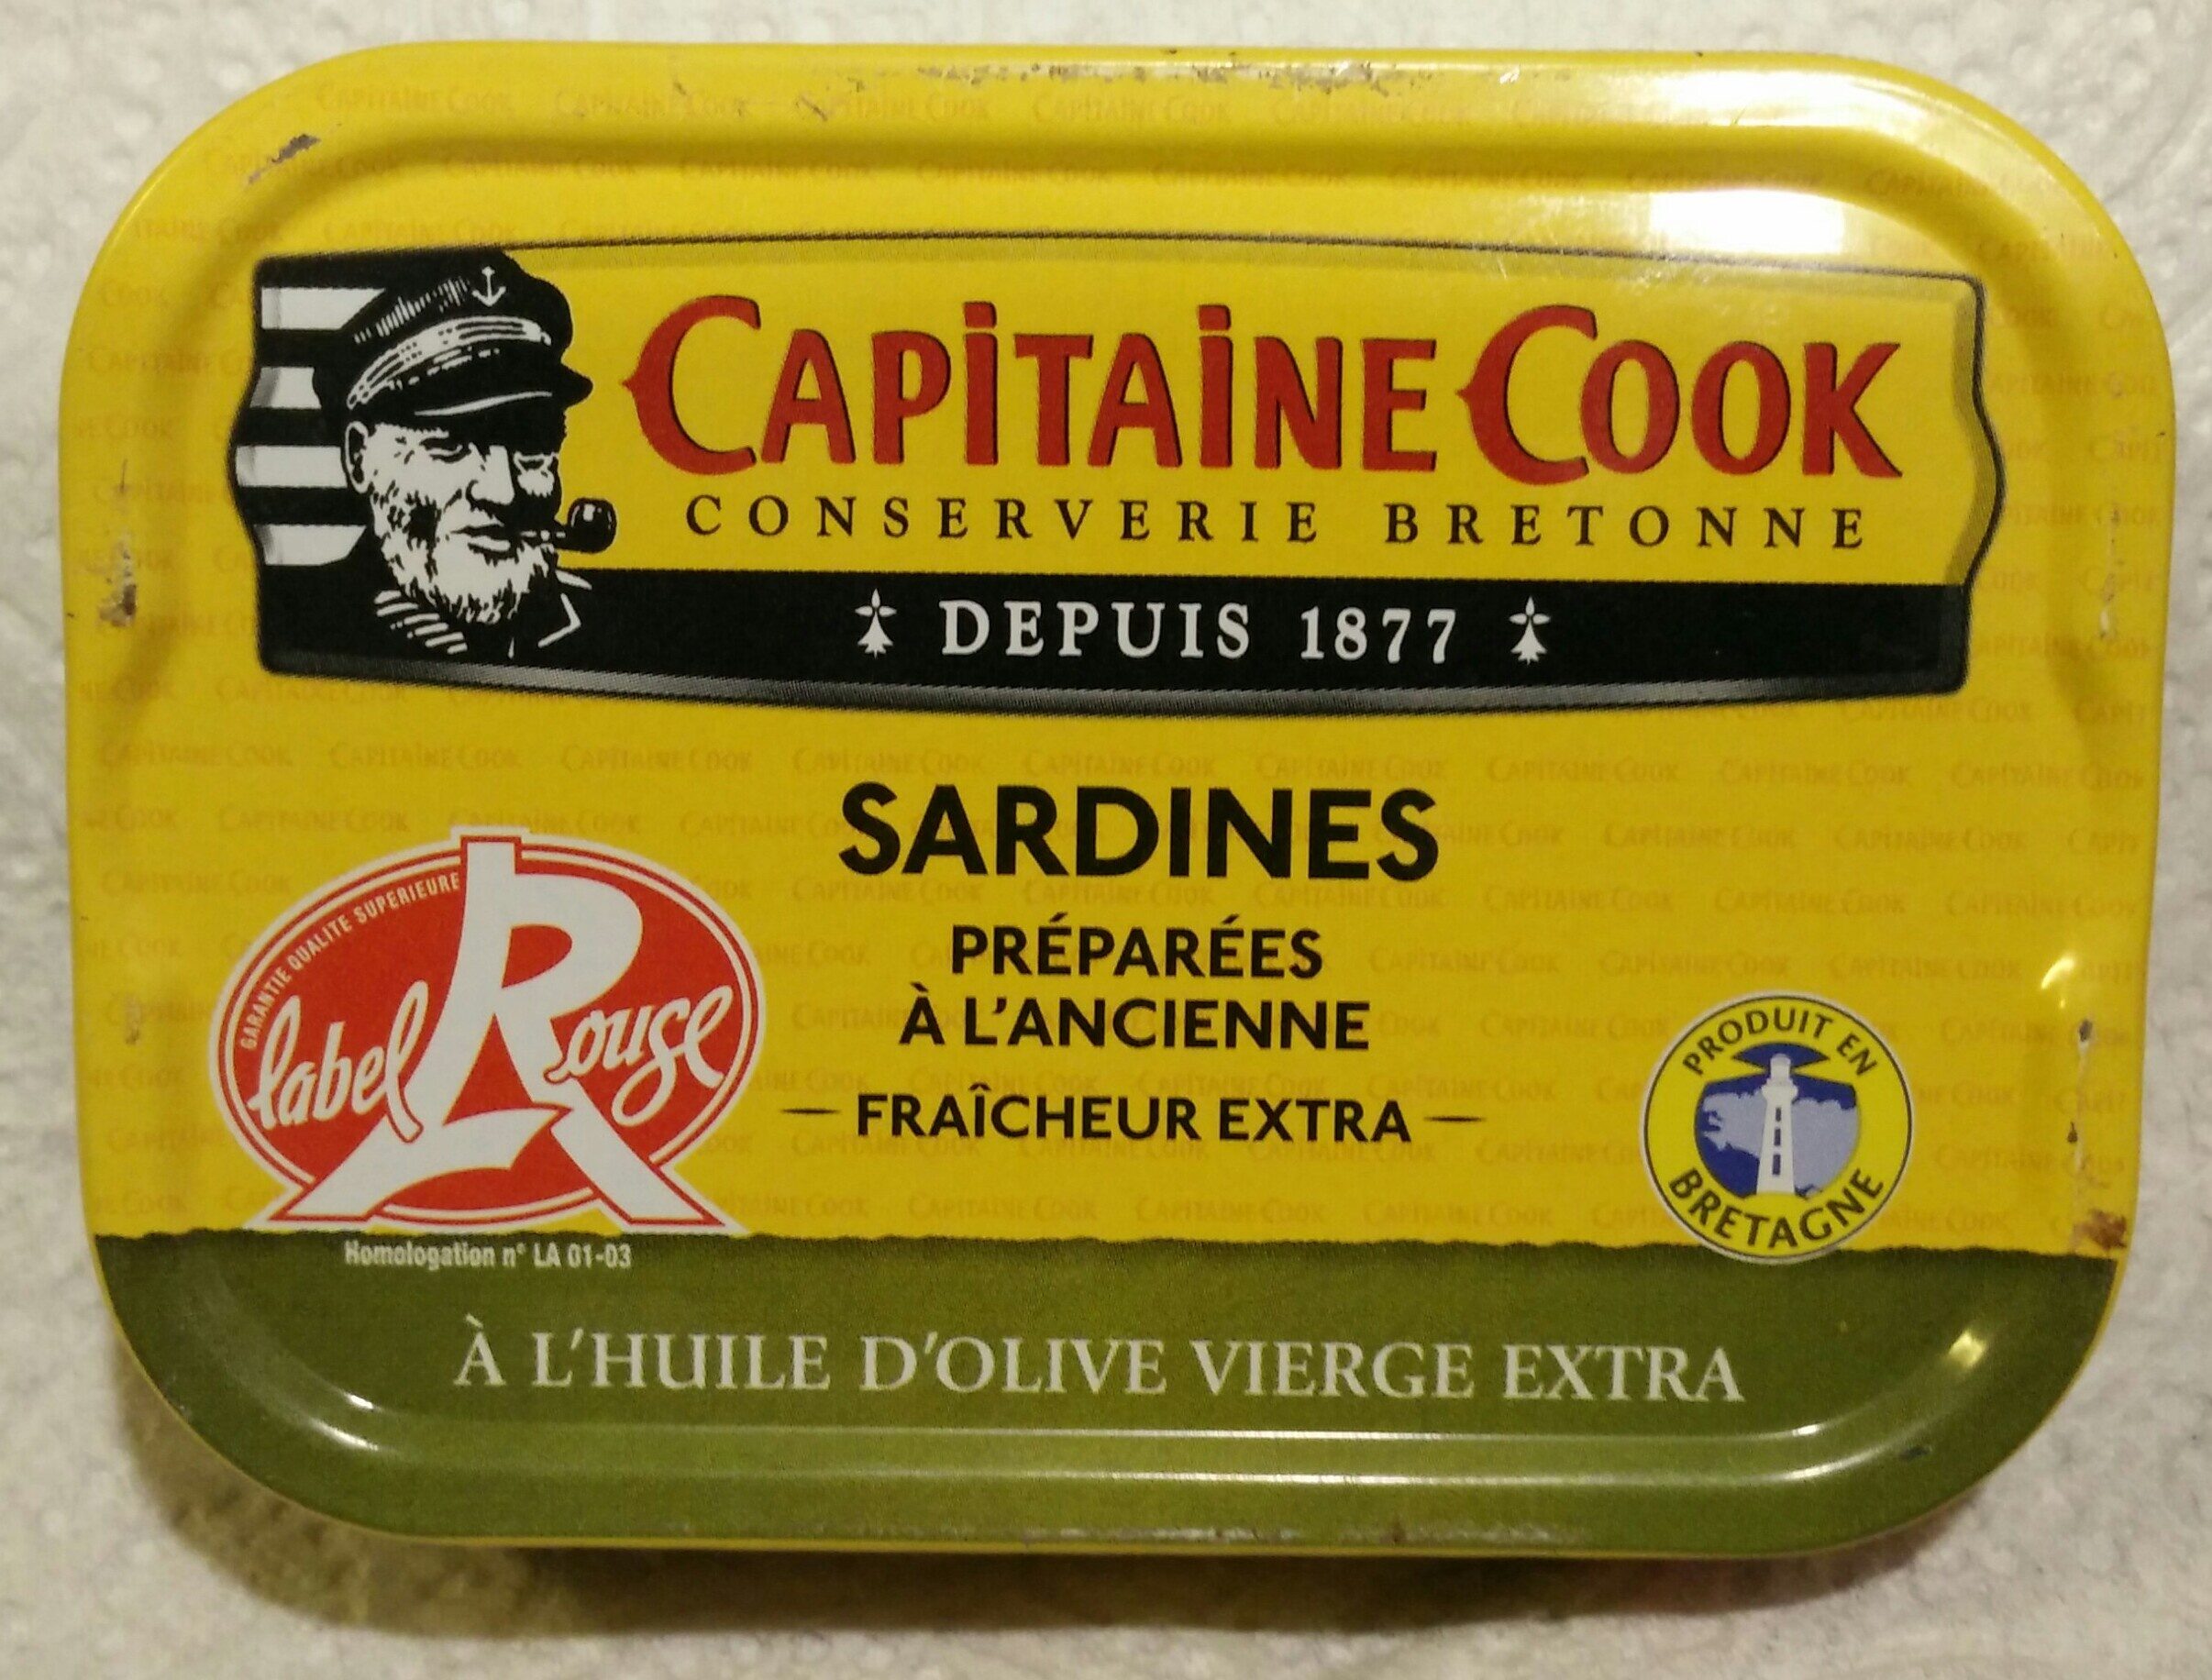 Sardines préparées à l'ancienne fraîcheur extra à l'huile d'olive vierge extra - Produit - fr